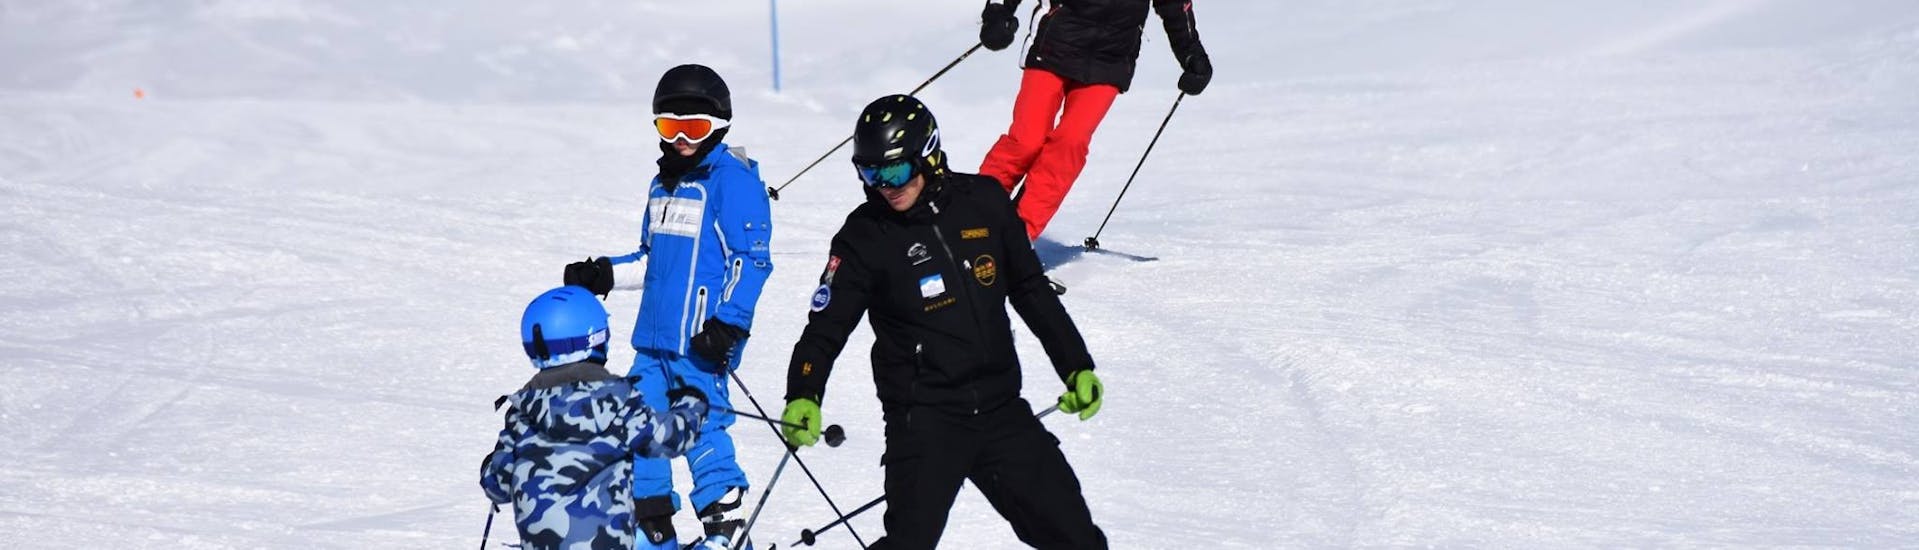 Cours de ski Enfants (5-15 ans) pour Débutants.